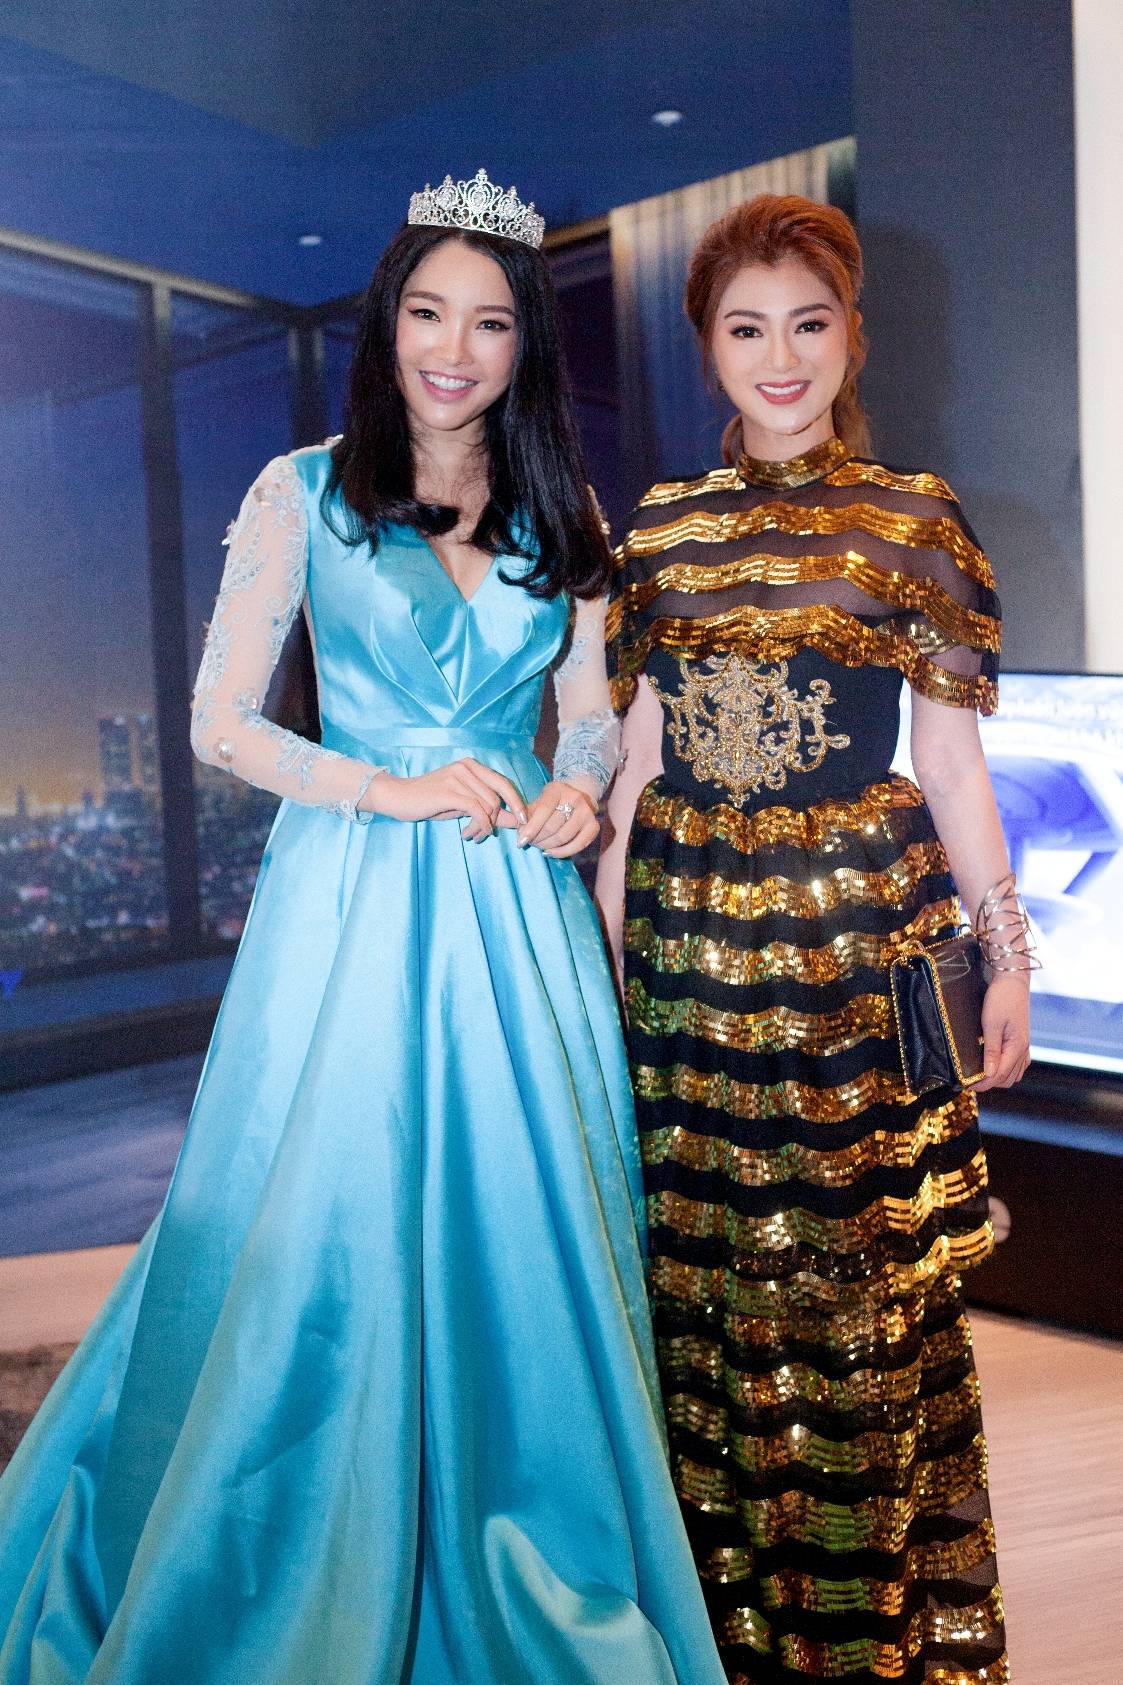 Á hậu Siêu tài năng Thế giới 2017 Lương Thái Trân rạng ngời vẻ đẹp vương hậu trên thảm xanh tvBlue